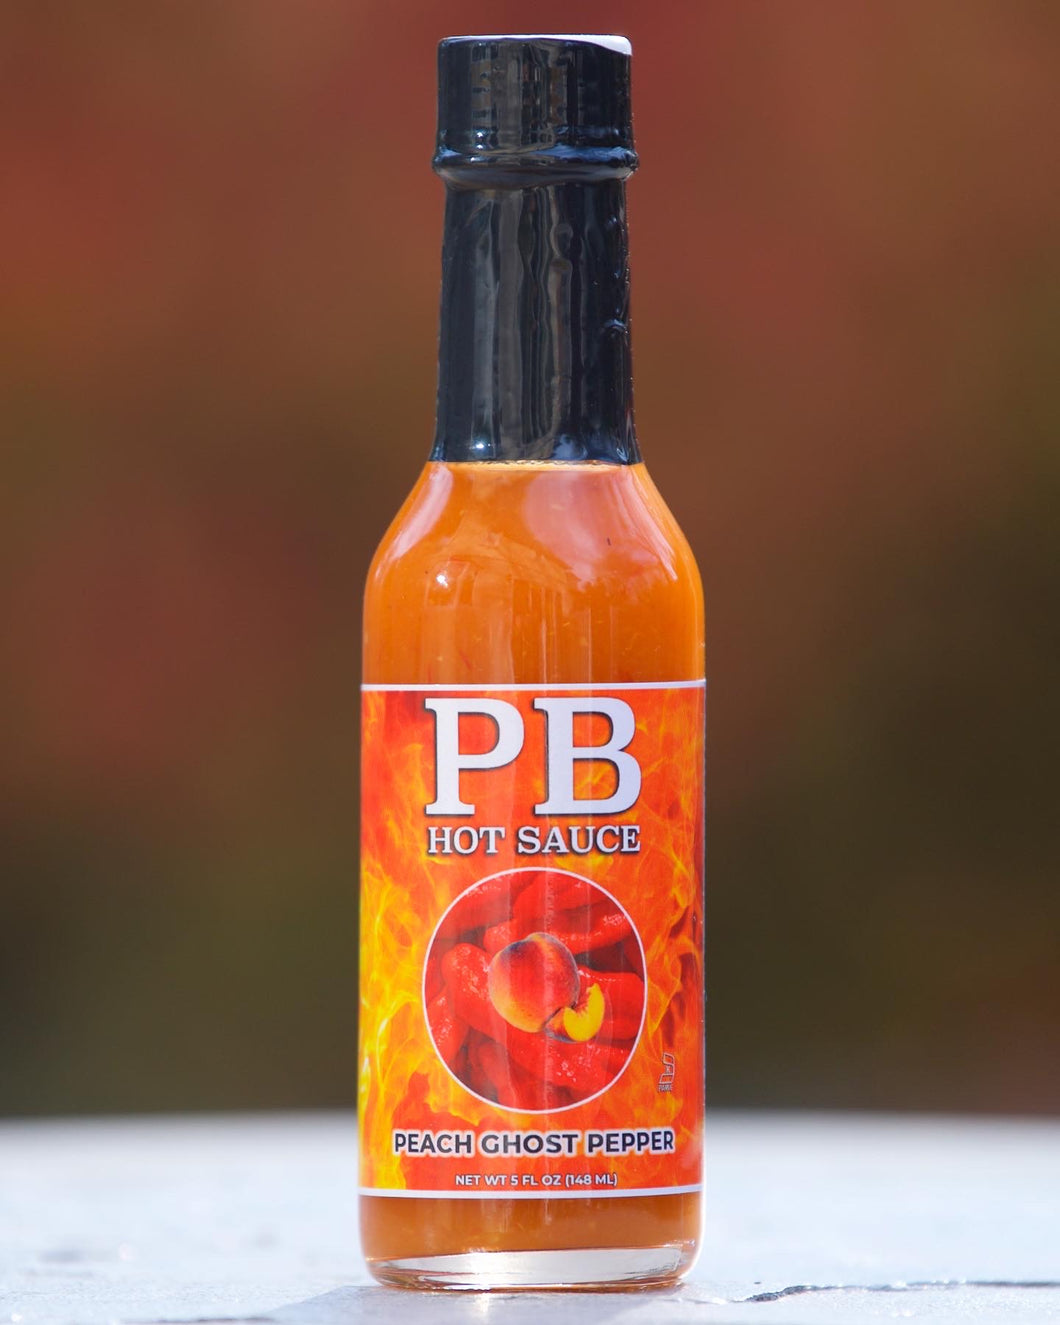 PB Peach Ghost Pepper Hot Sauce